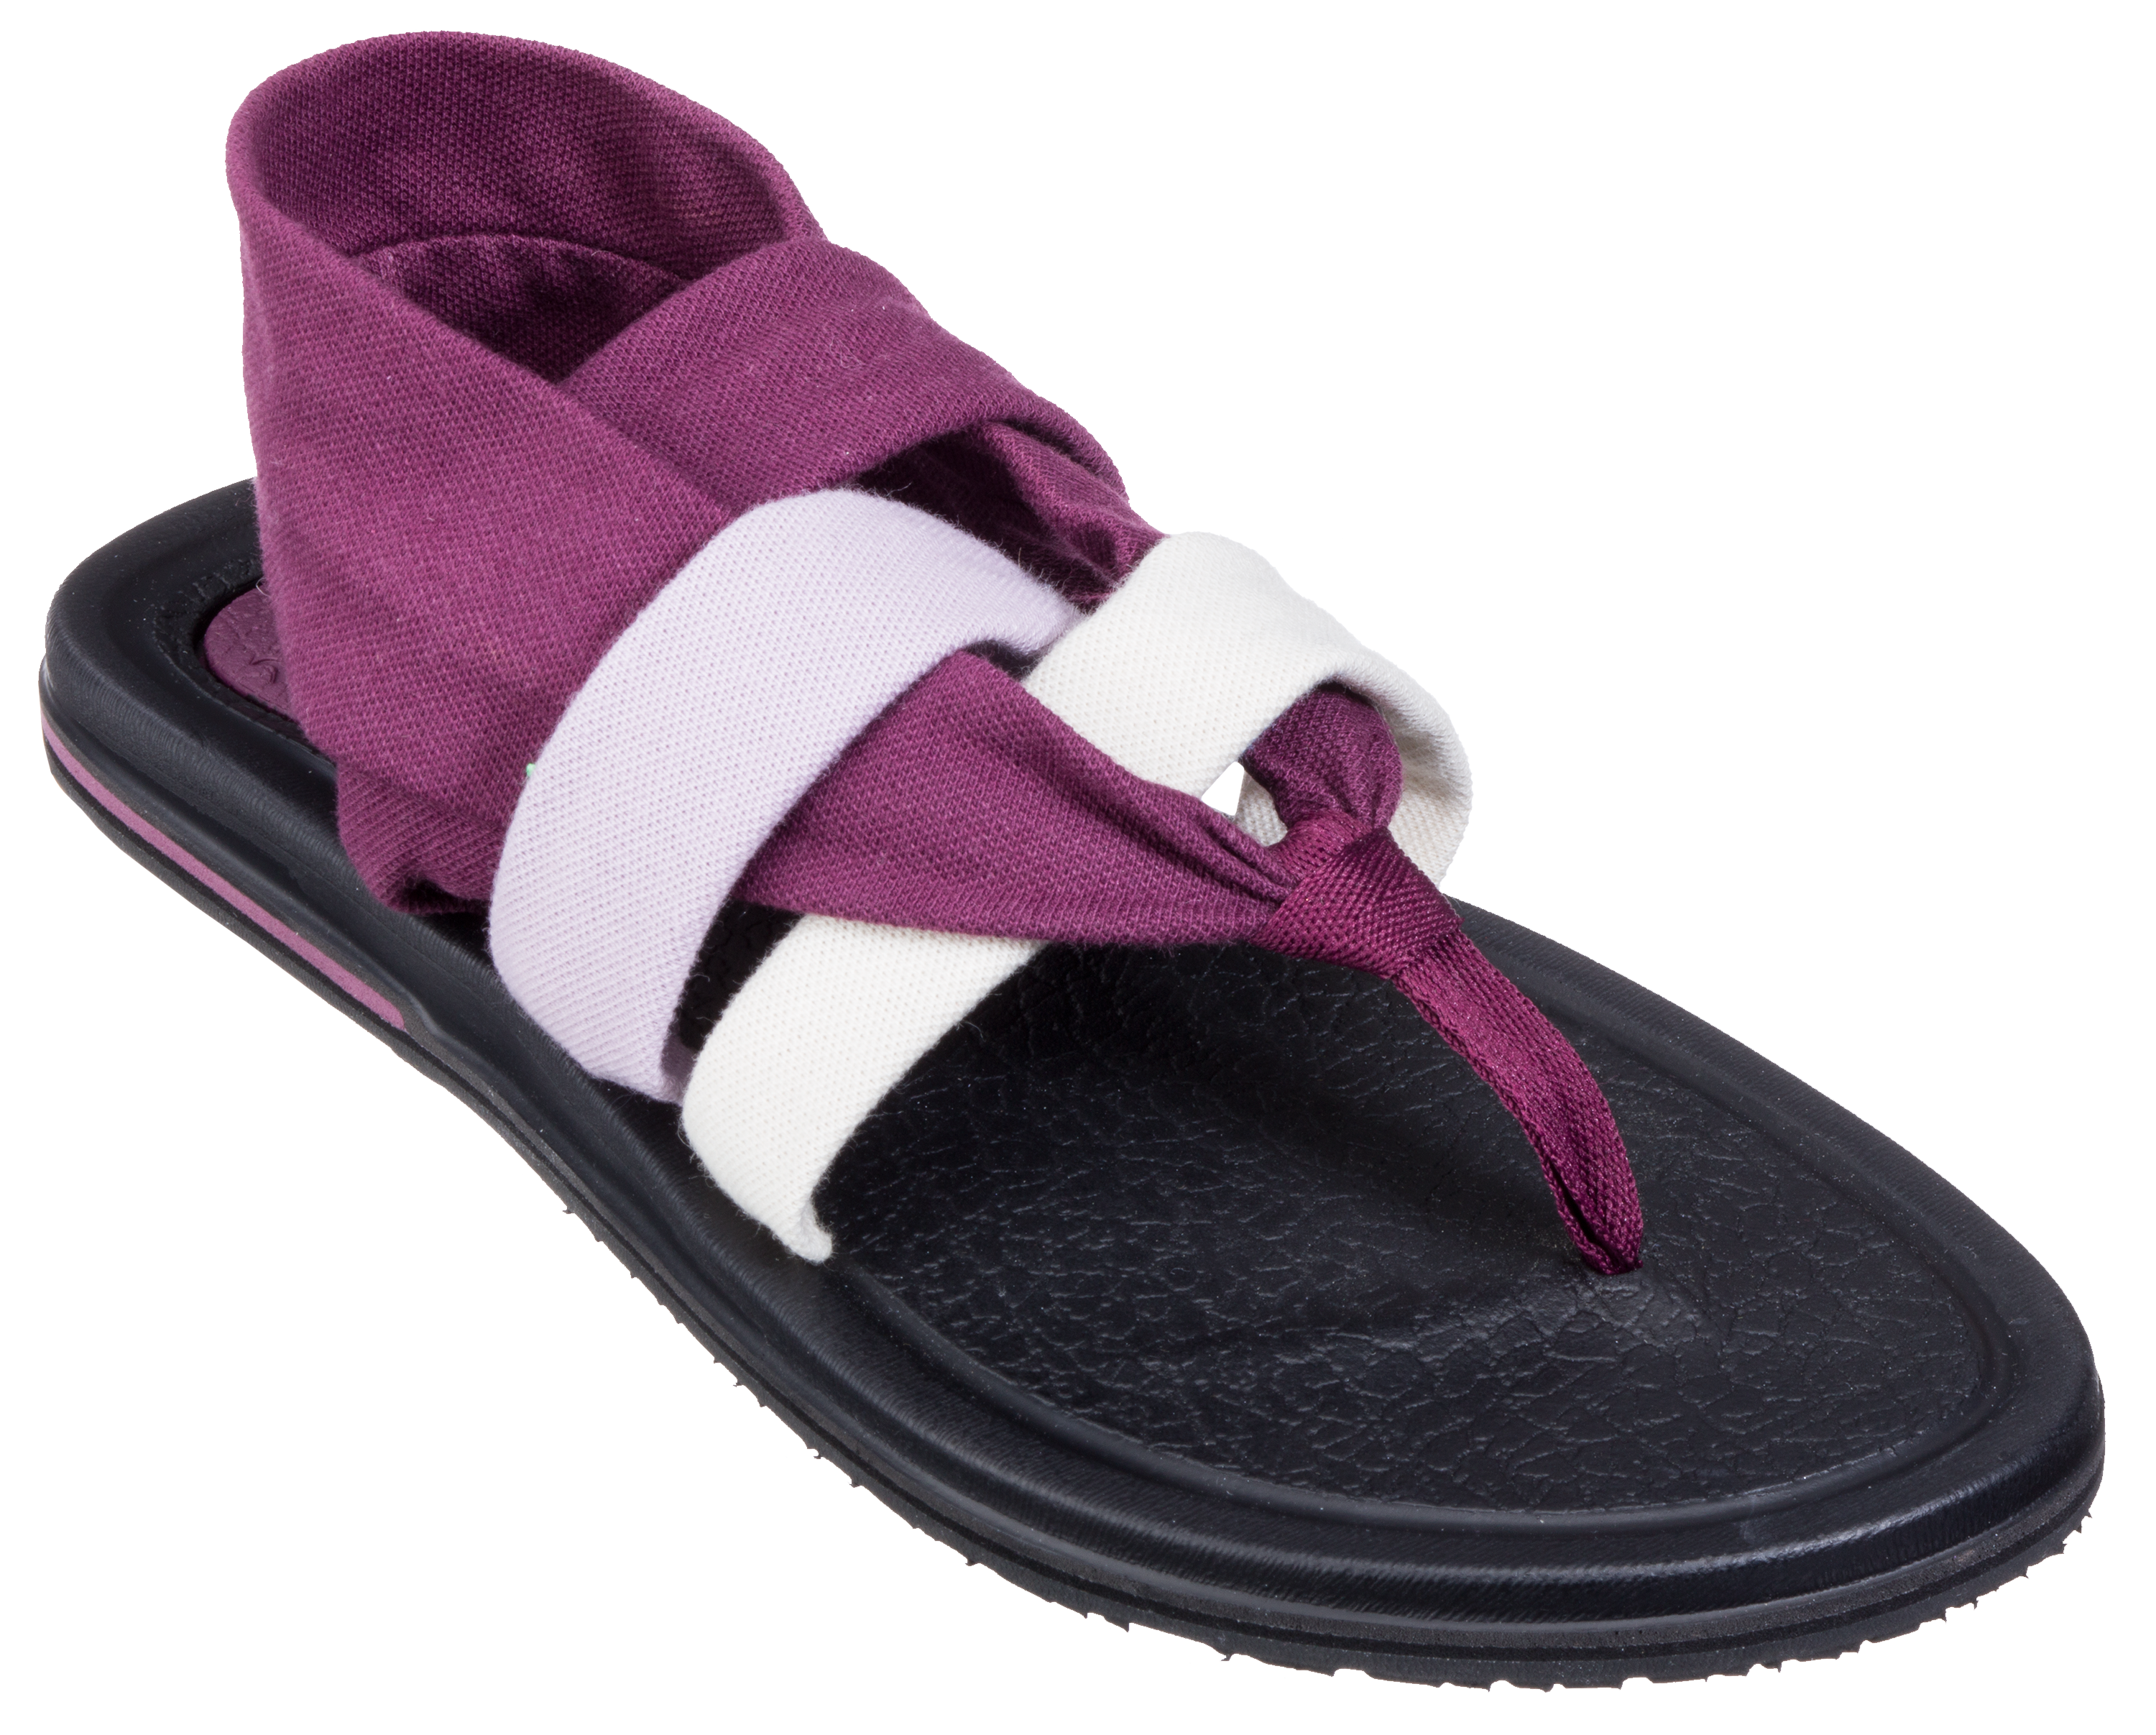 Sanuk yoga sling sandals  Sanuk yoga sling, Sandals, Womens flip flop